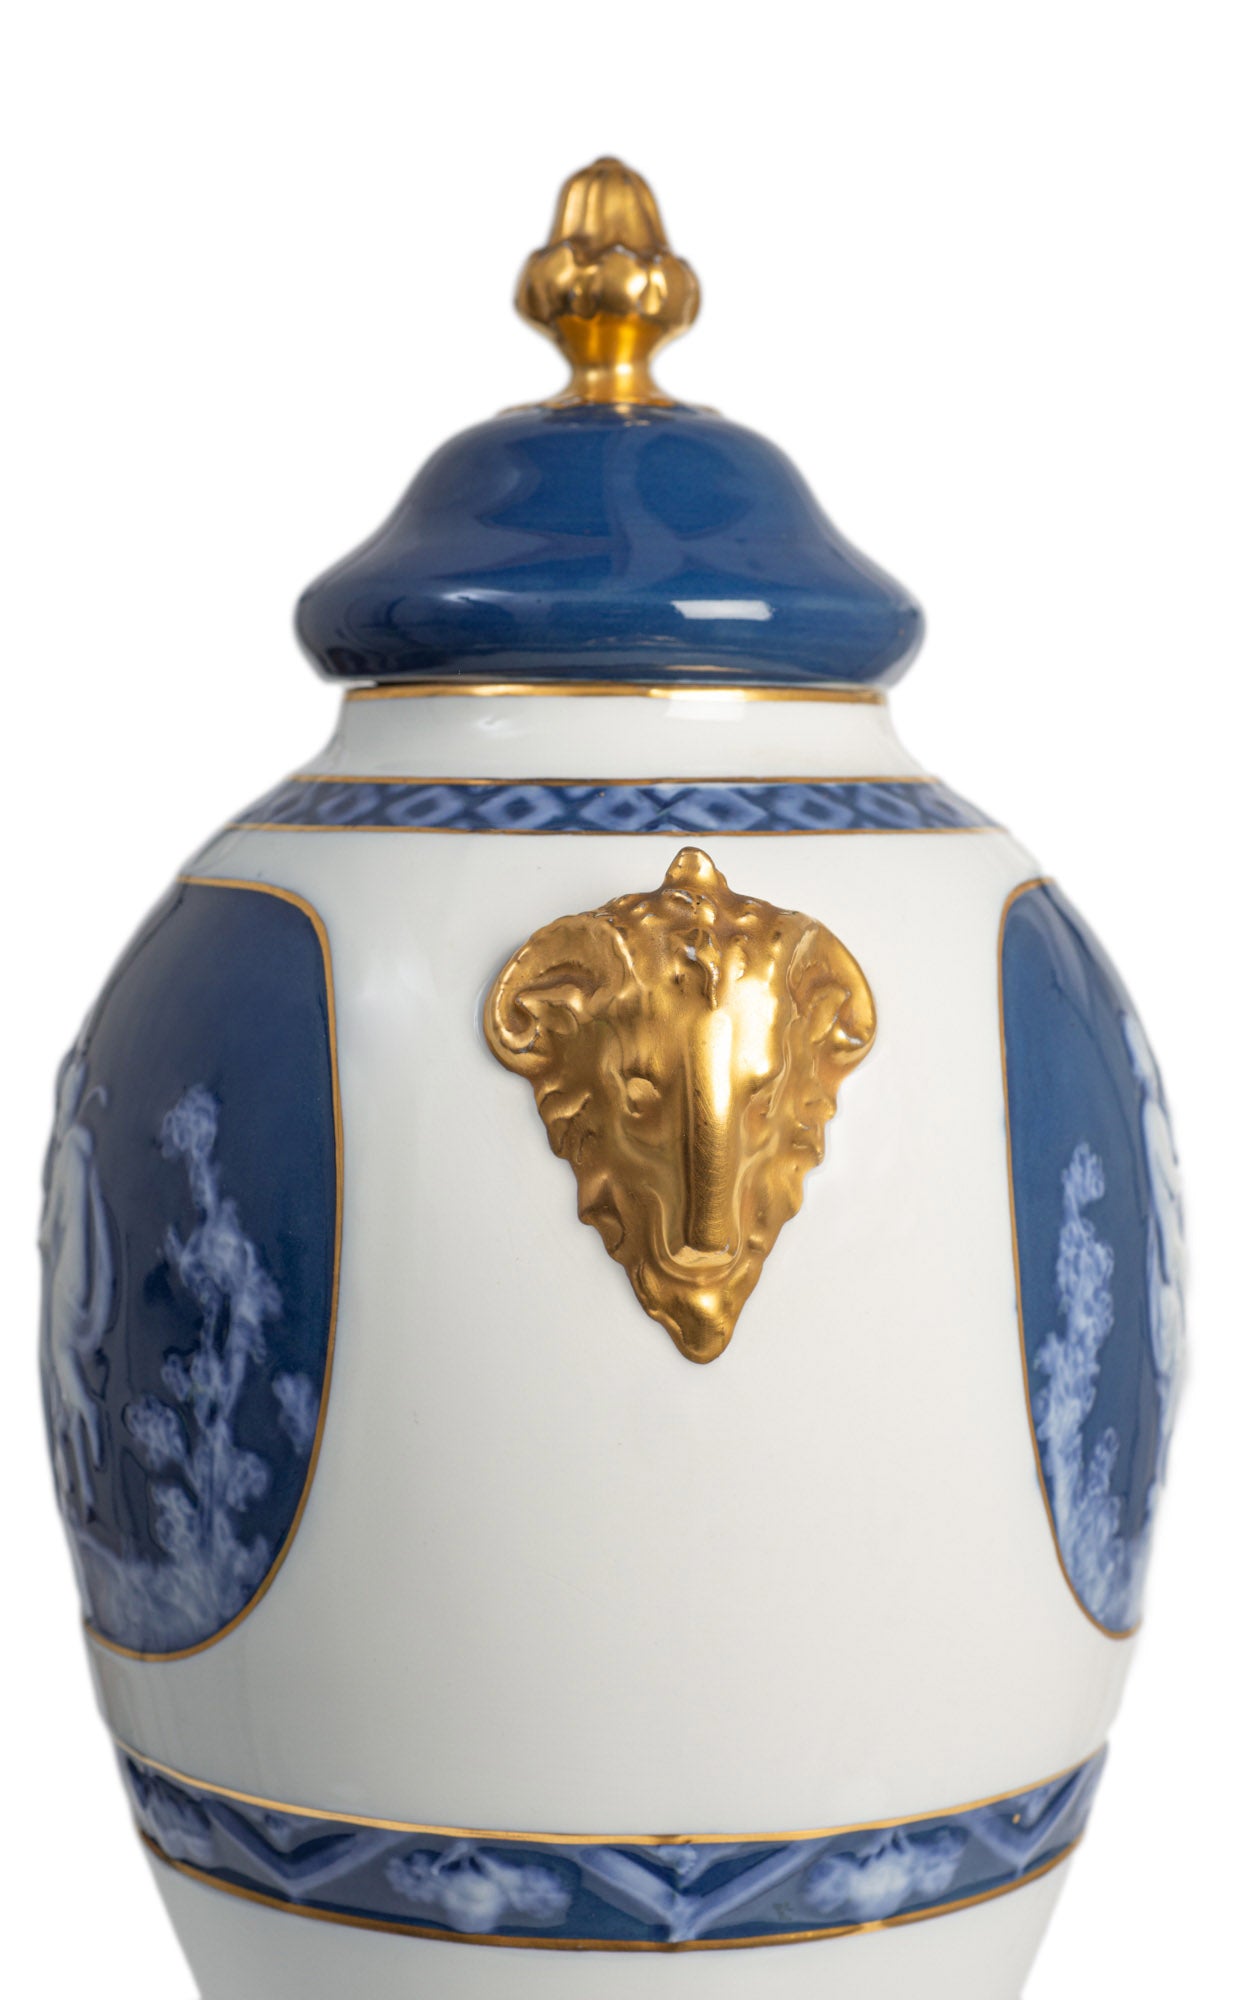 Antique Limoges Porcelain Large Pate-sur-Pate Vase by Artist Leroux c1915 (Code 2385)